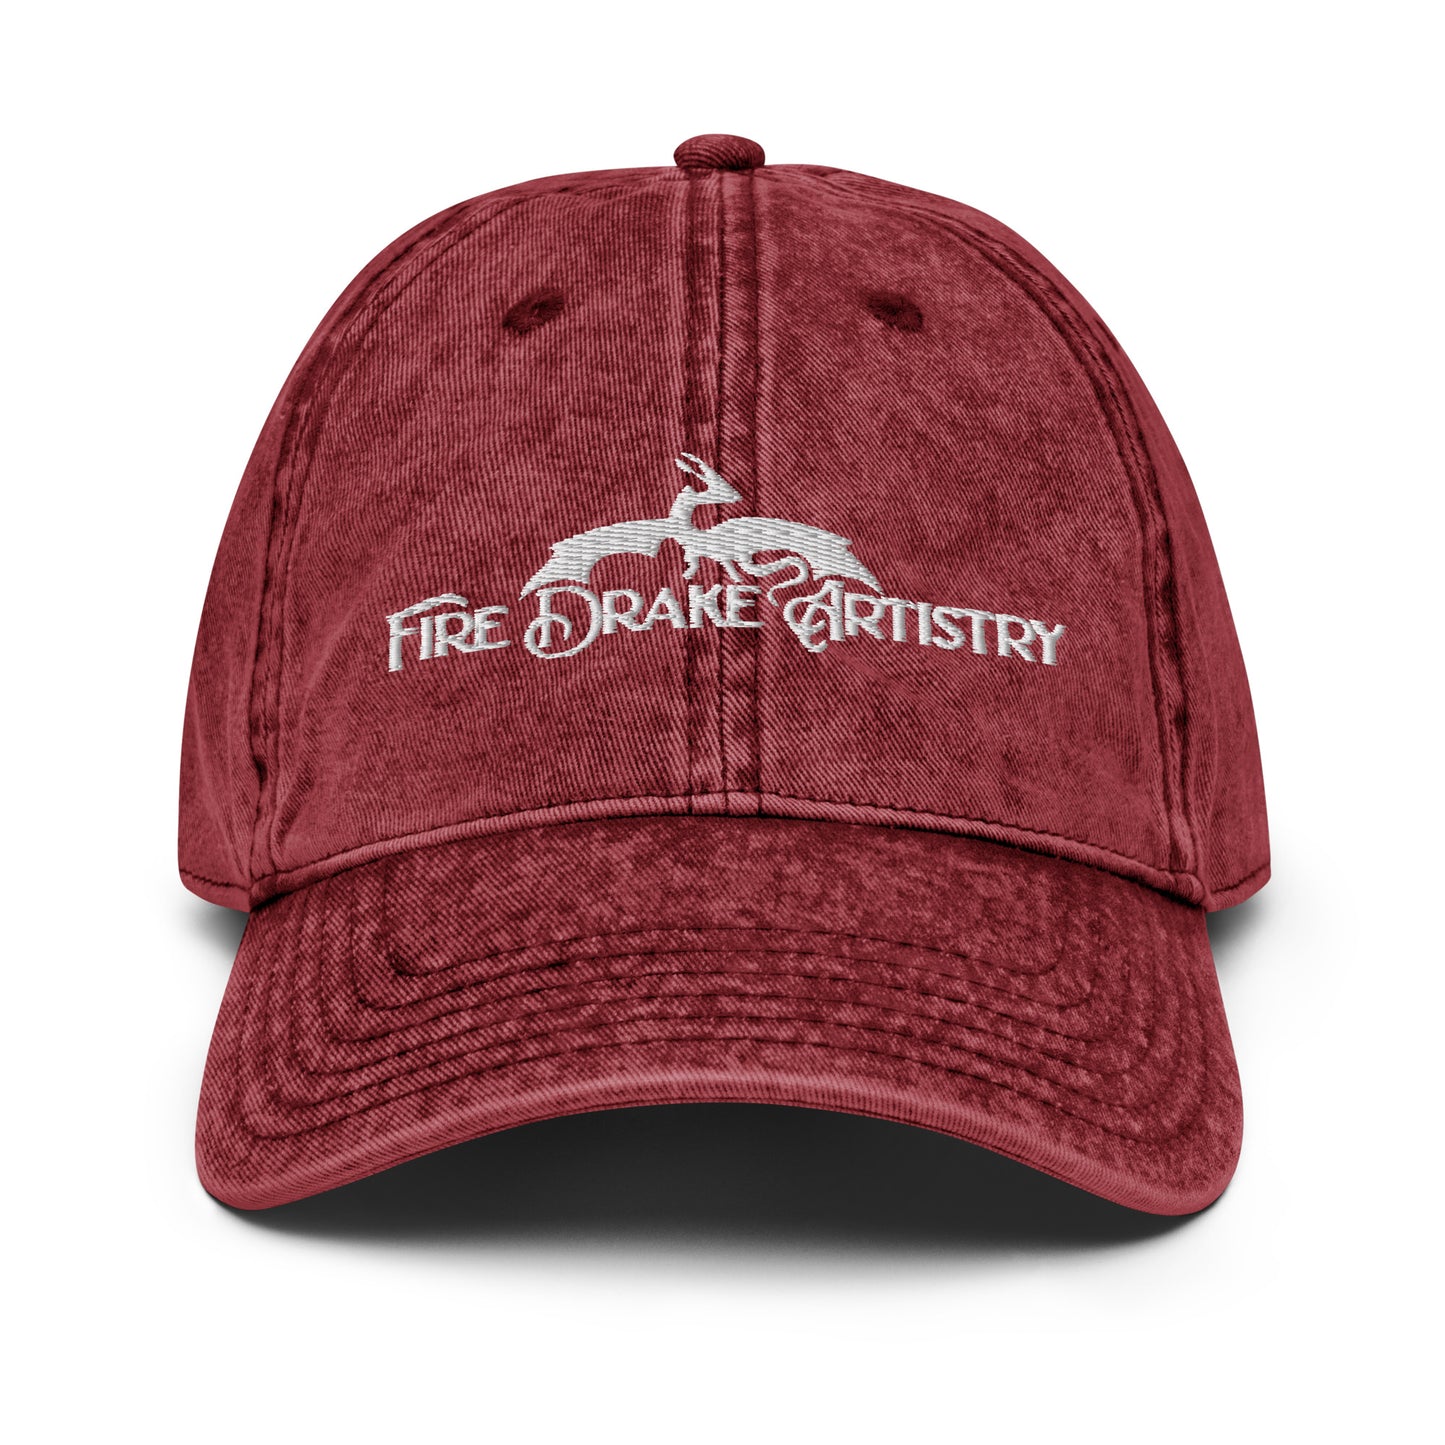 FireDrake Artistry™ Vintage Hat for FireDrake Artistry